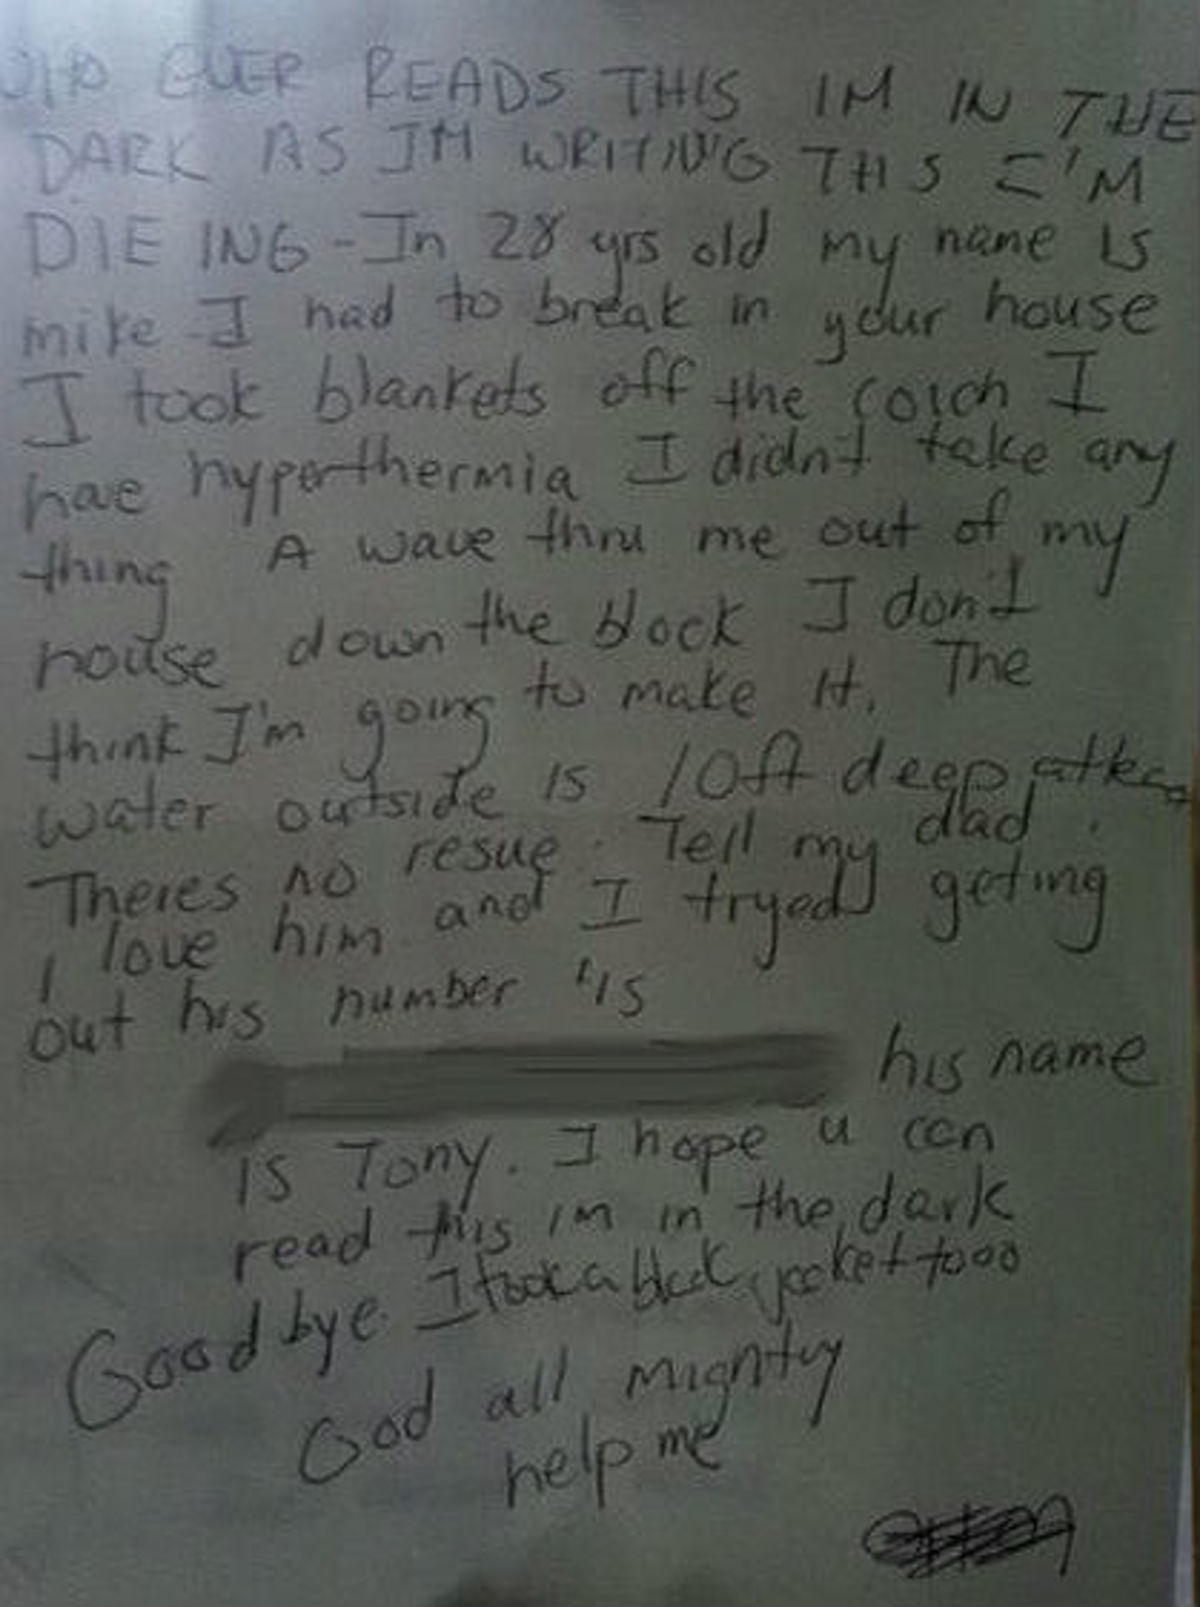 “Όποιος διαβάζει αυτό σημείωμα να ξέρει ότι πεθαίνω! Πείτε στον πατέρα μου ότι τον αγαπώ”